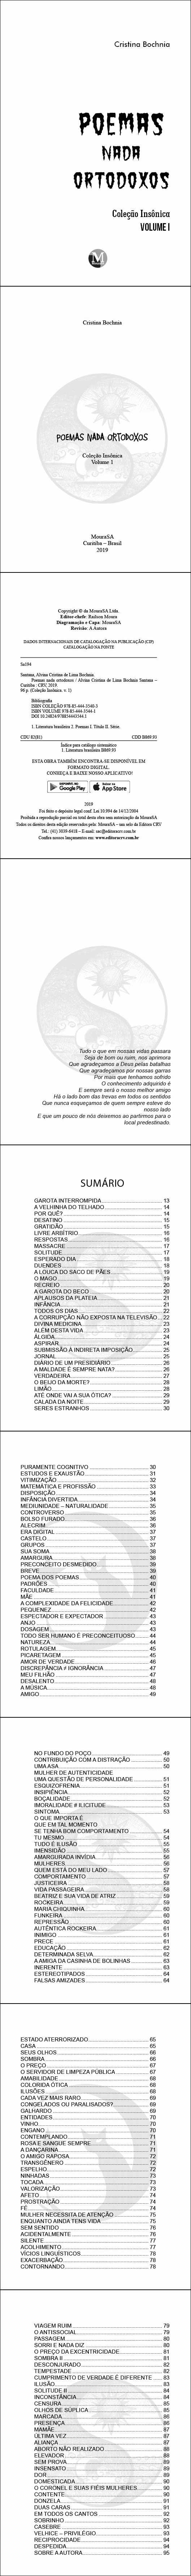 POEMAS NADA ORTODOXOS <br> Coleção Insônica - Volume 1